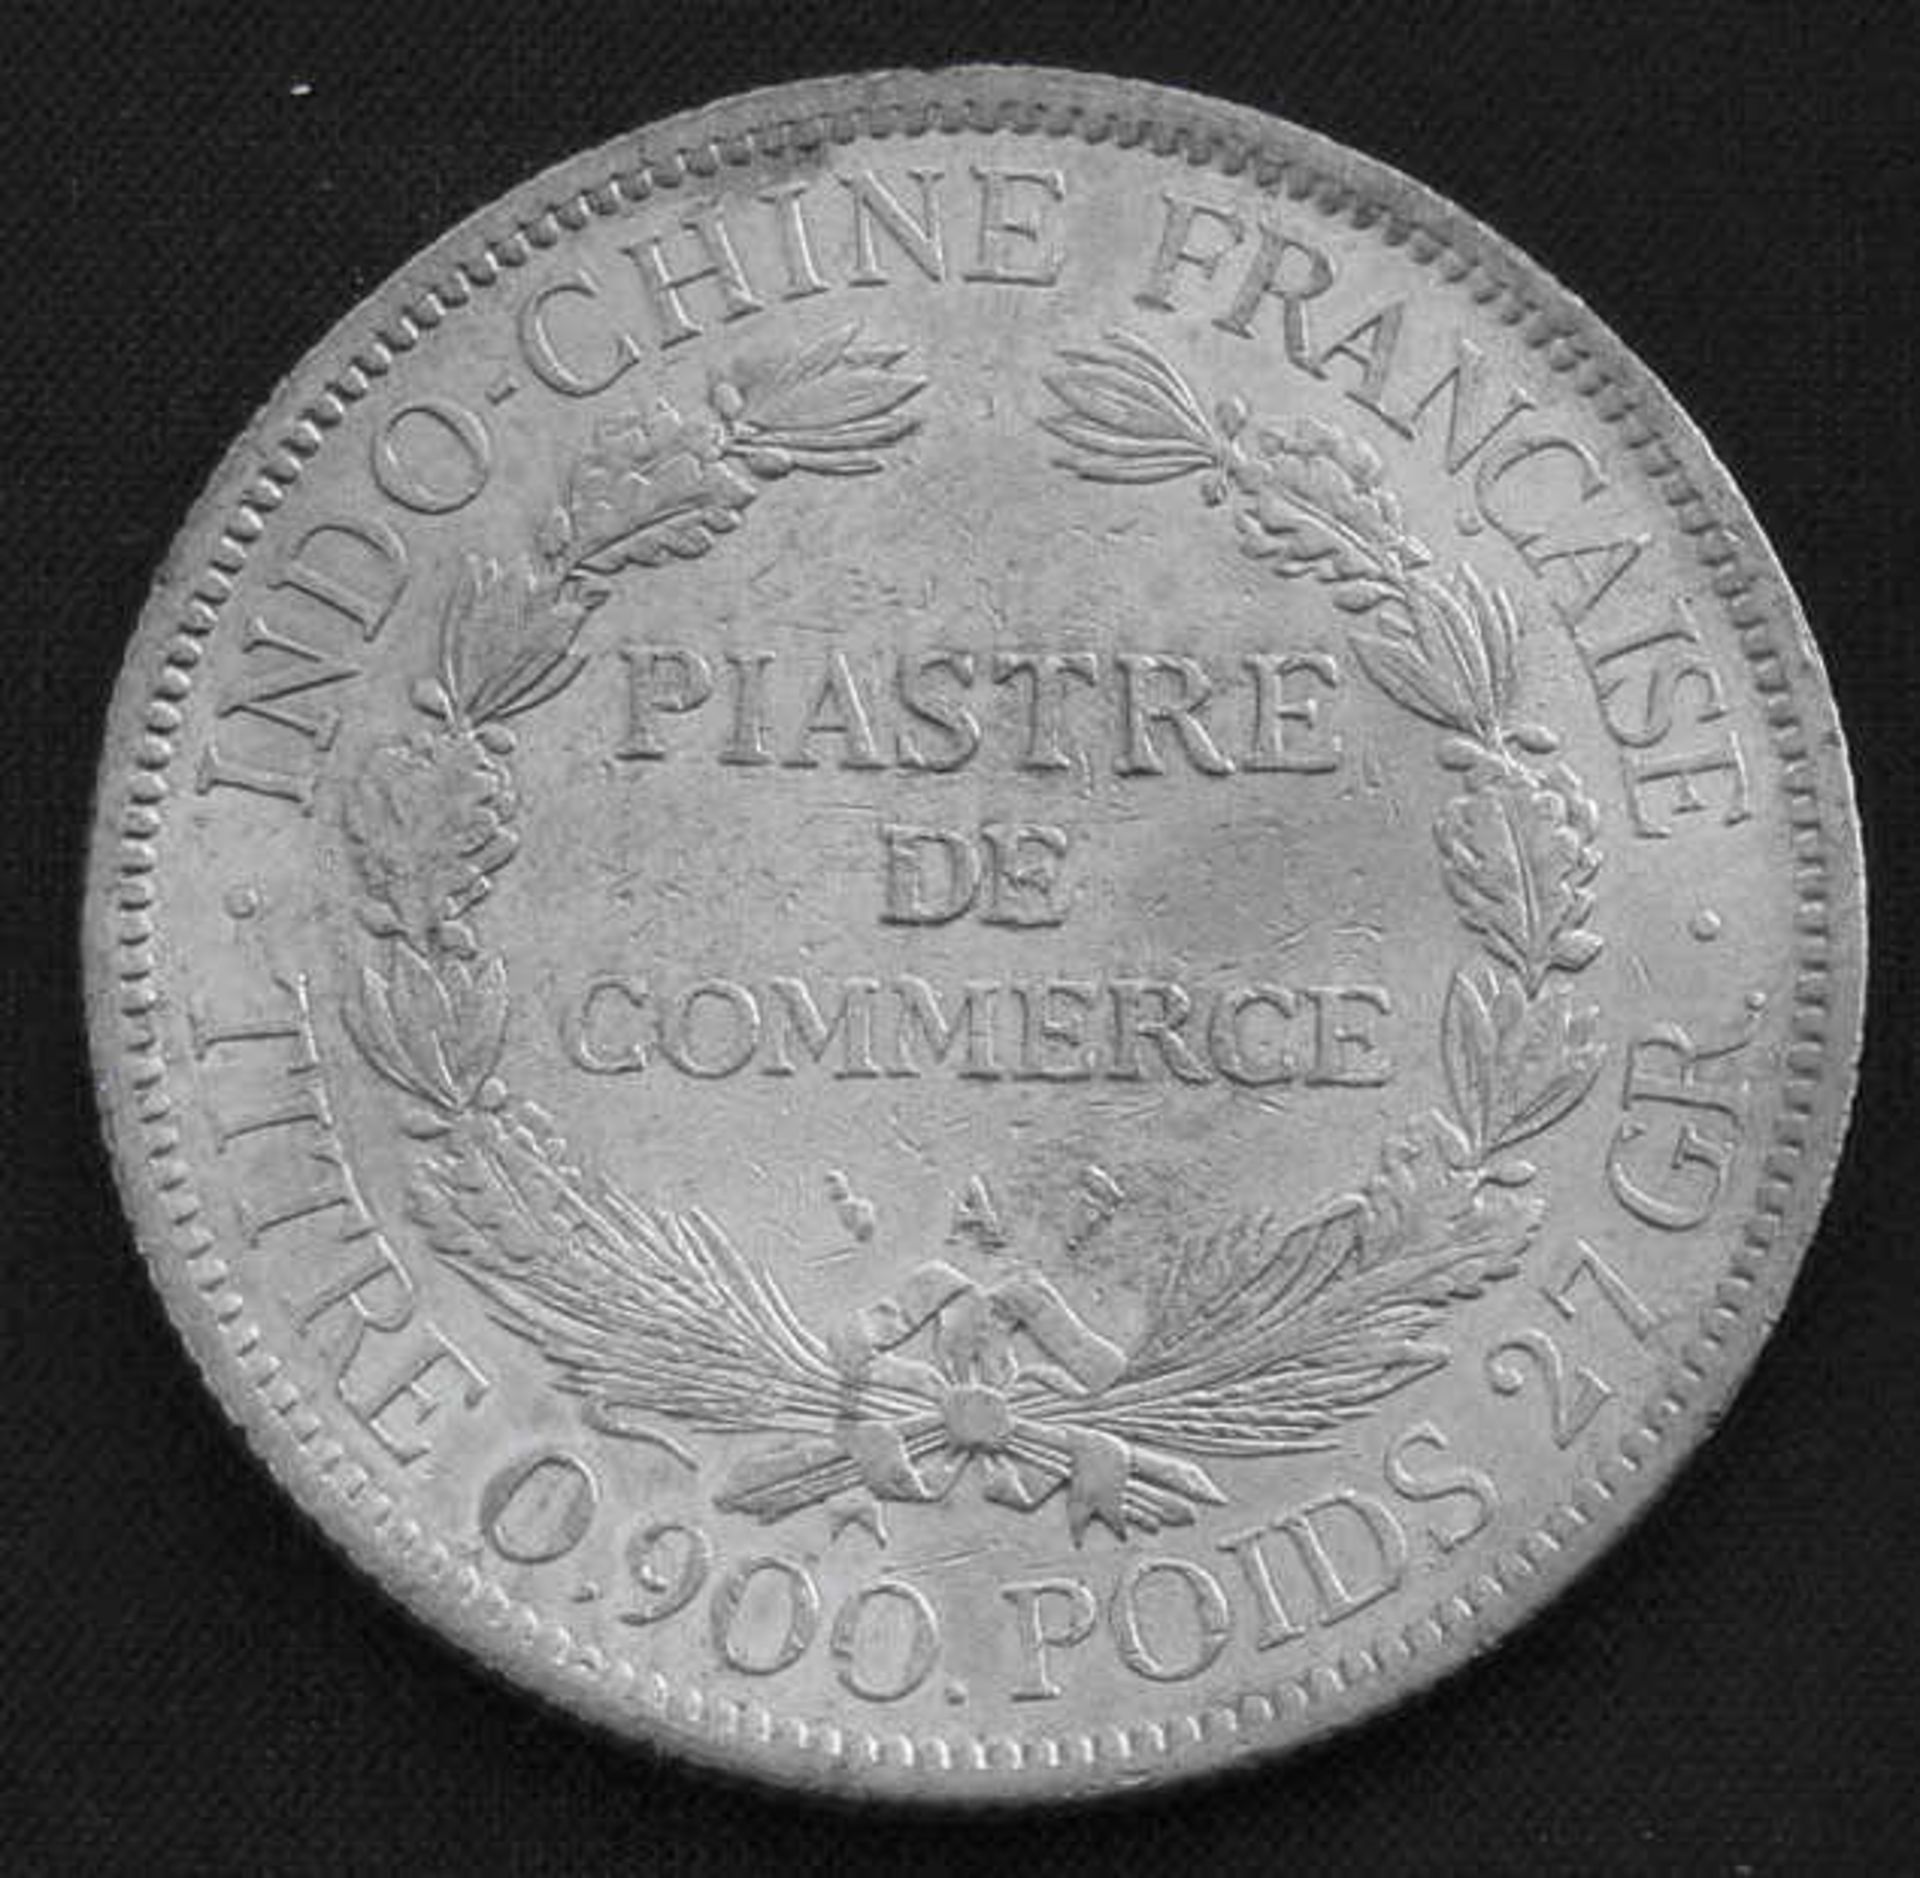 Silbermünze Indochina, 1 Piaster 1900, Französische Kolonie, Katalog Nr. KM 5a/1Mindestpreis: 15 - Image 2 of 2